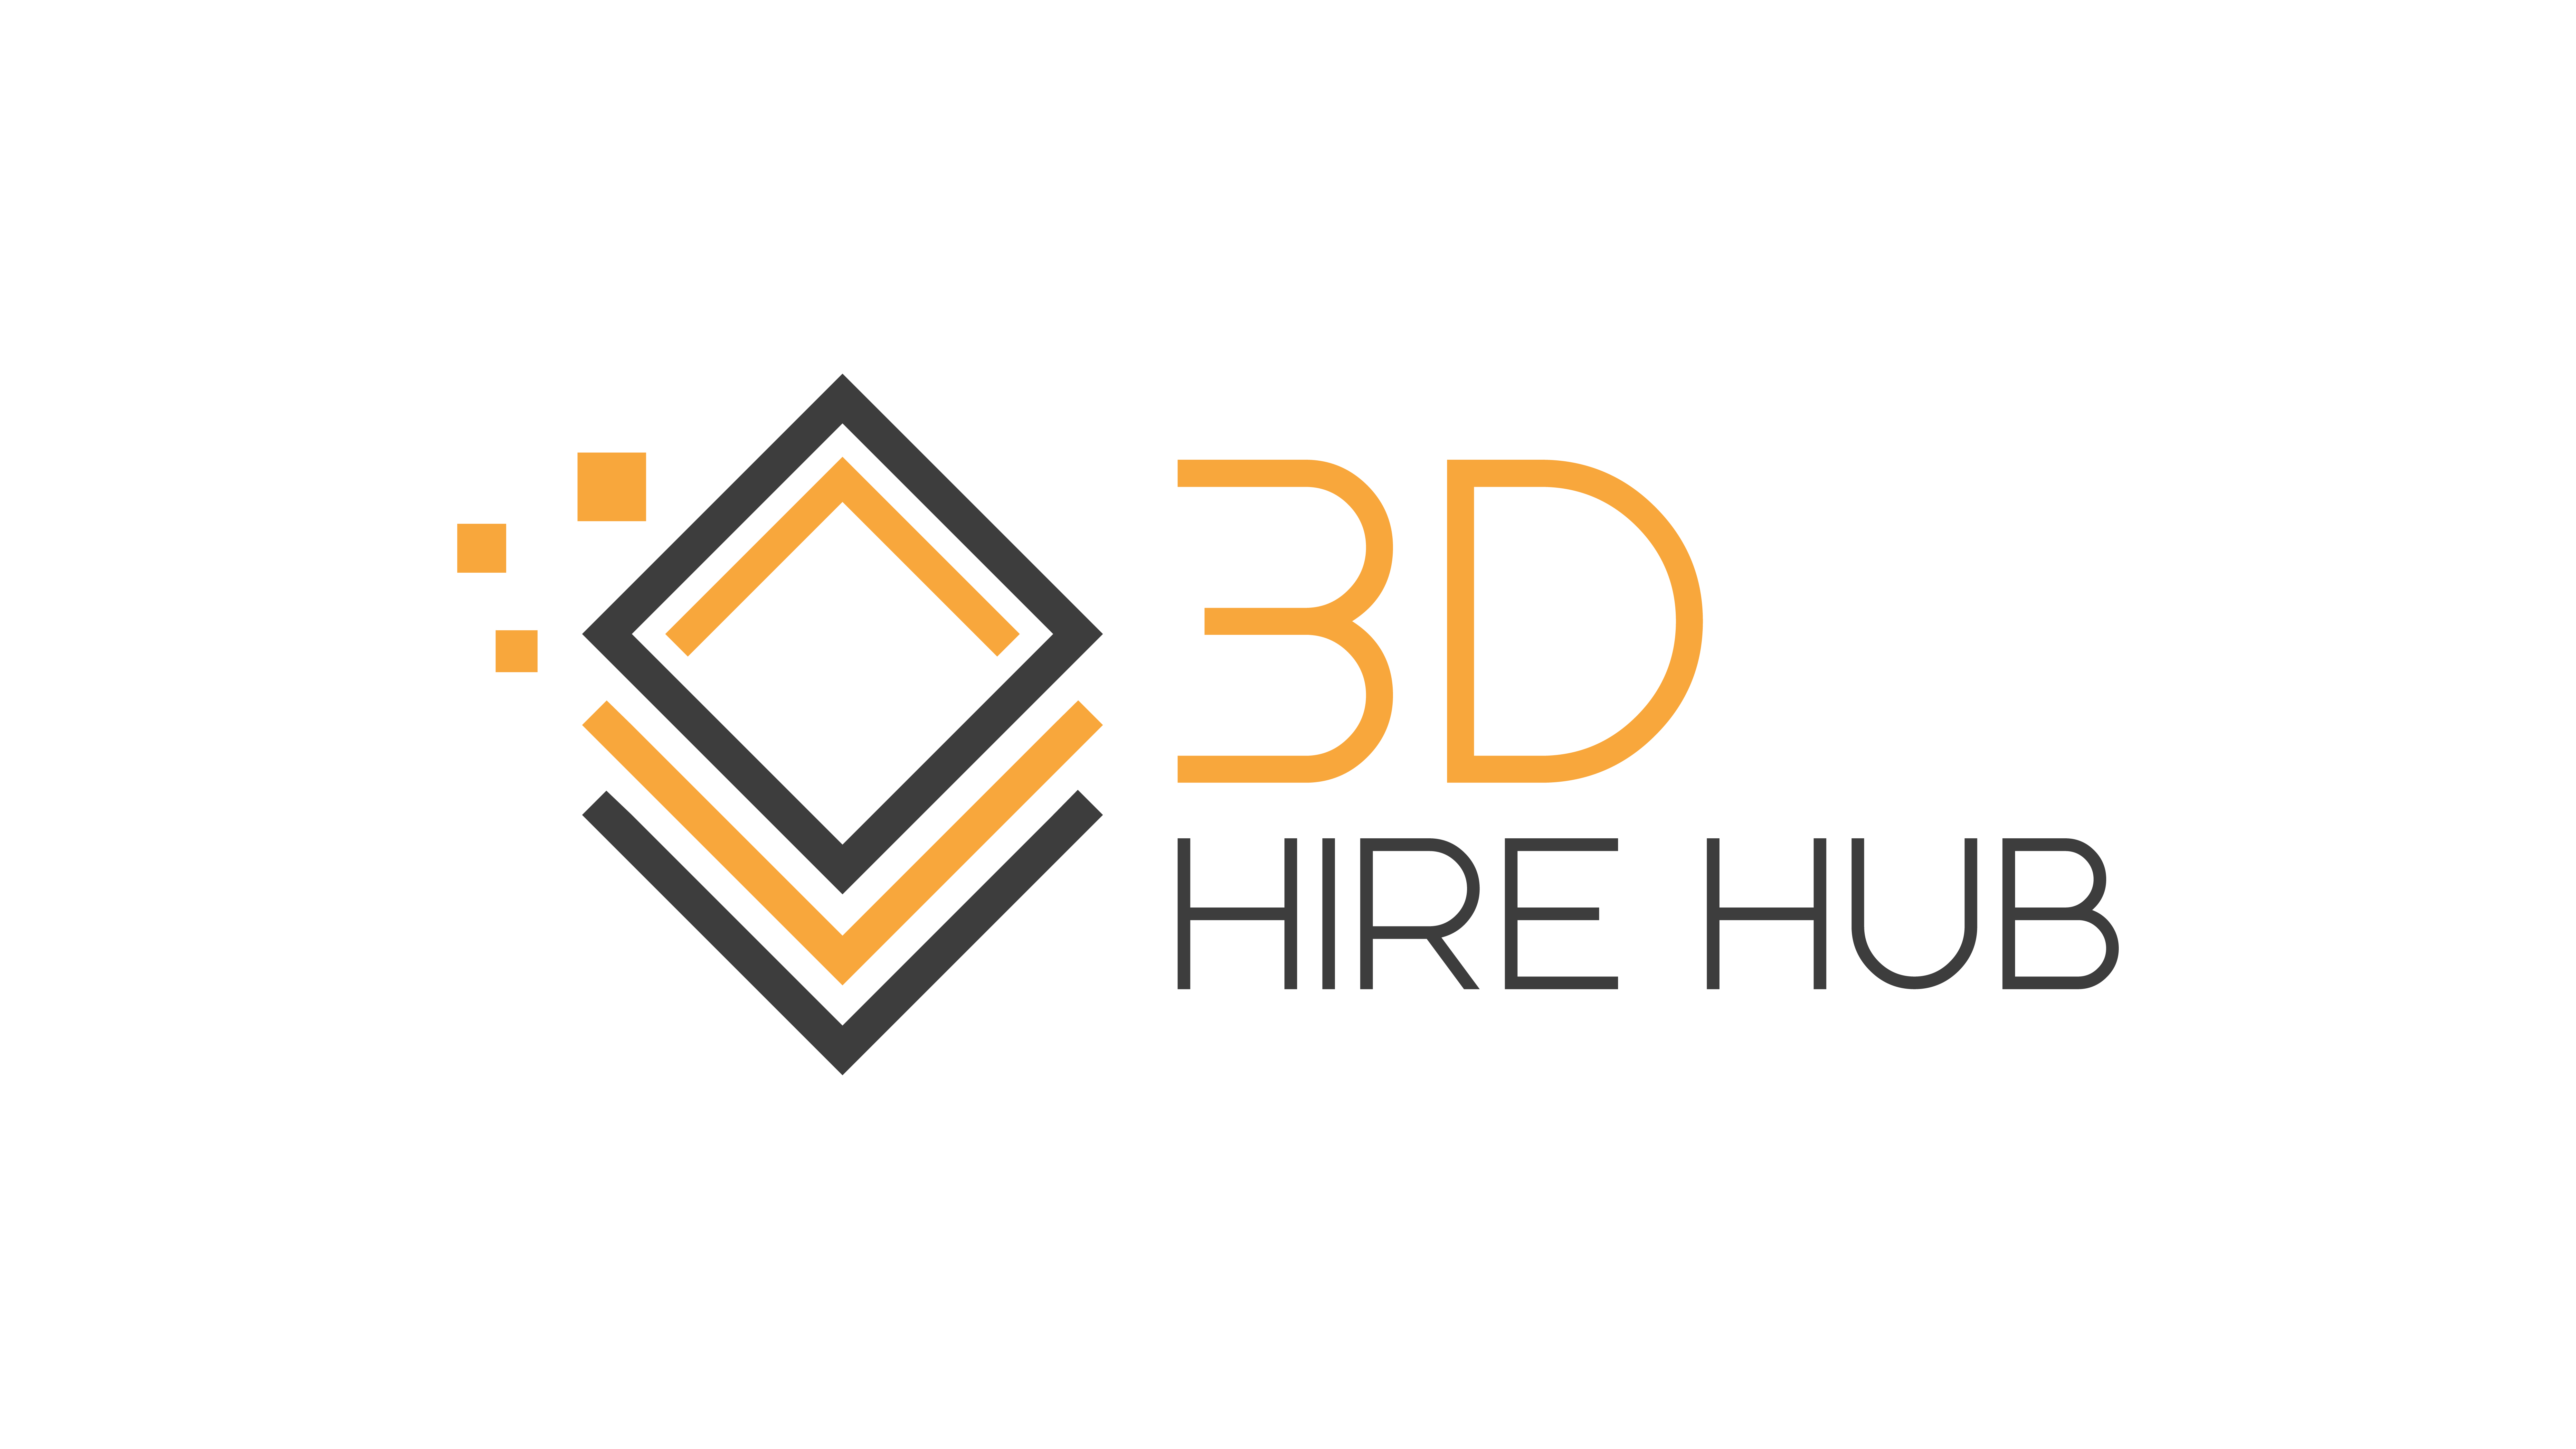 3D Hire Hub